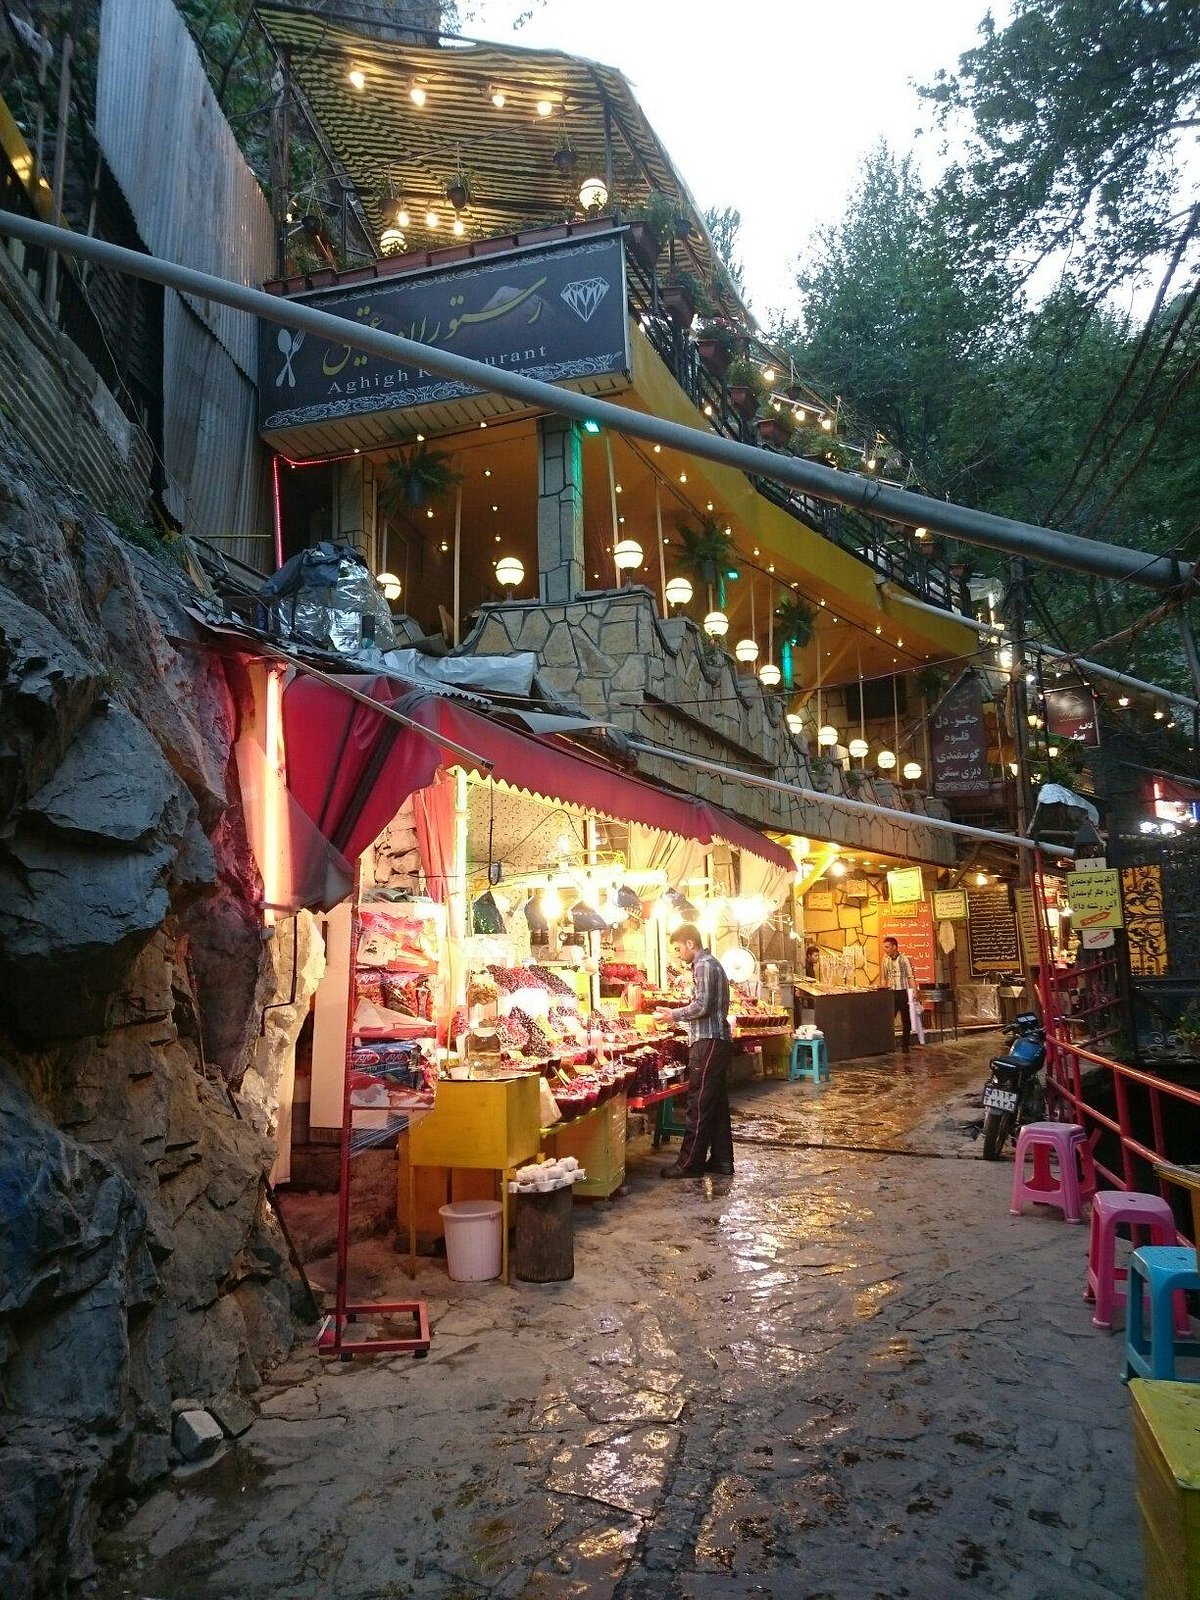 Darband, Tehran